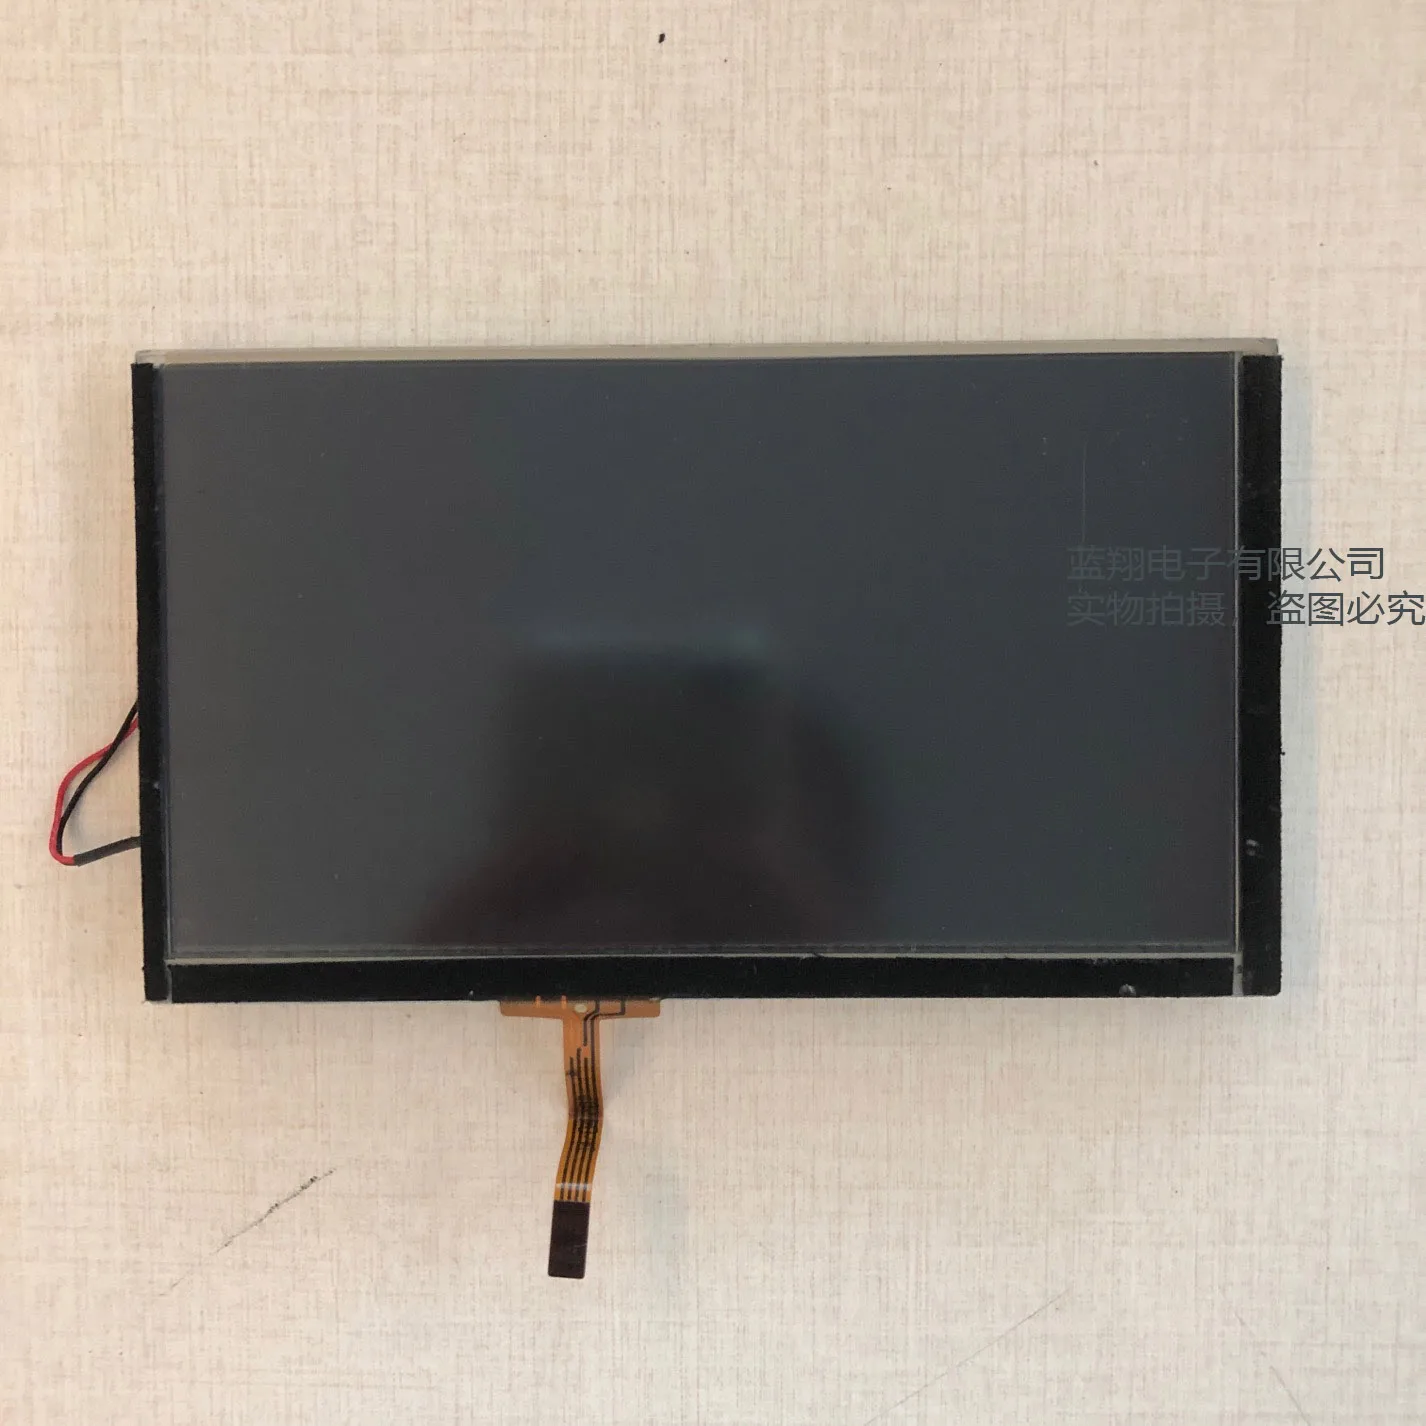 PM065WX4 LCD screen